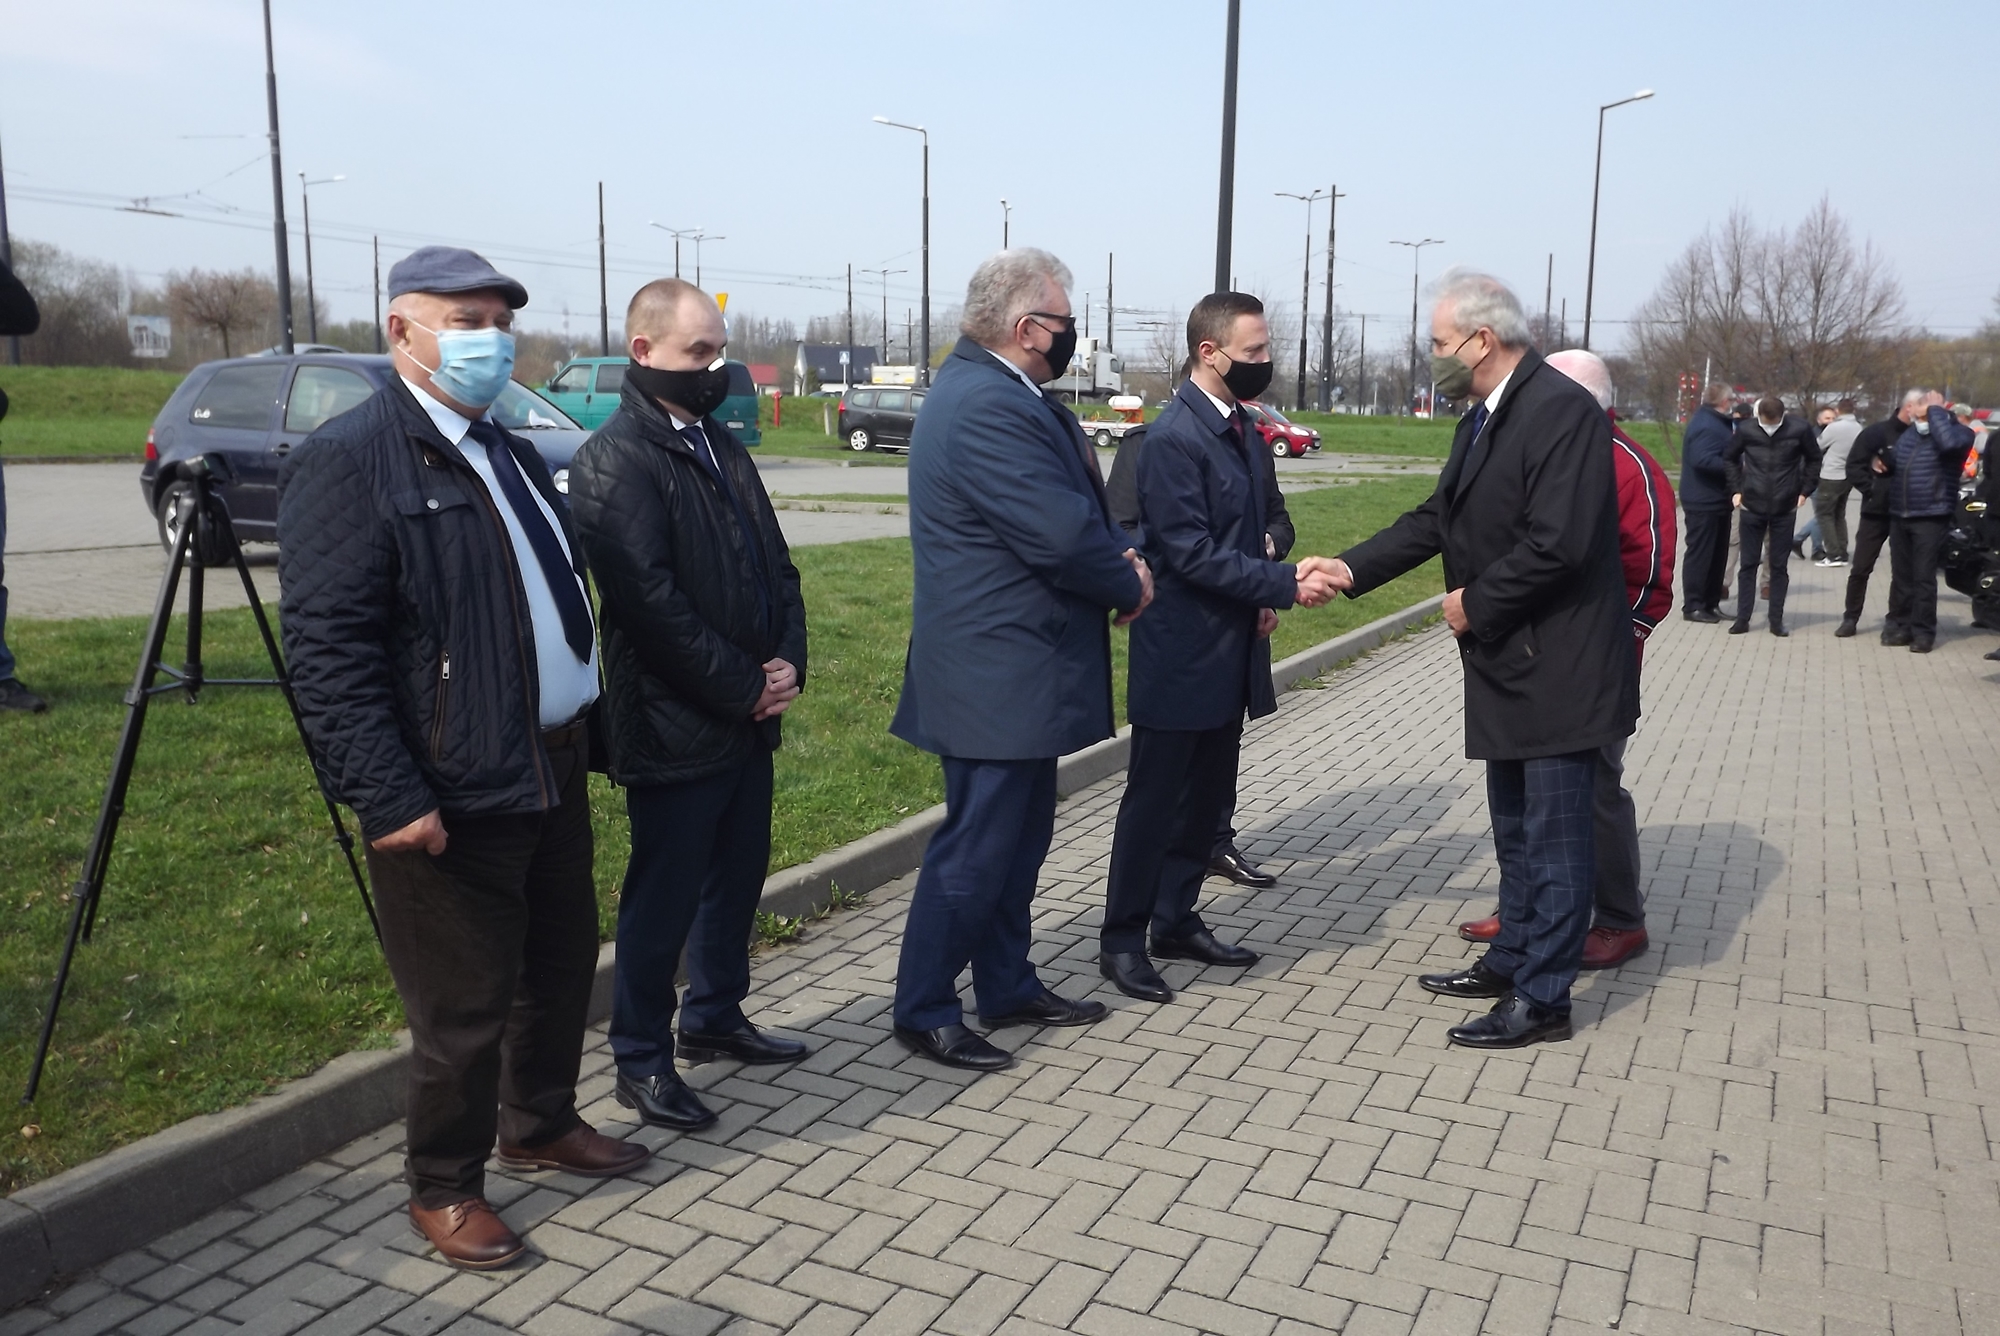 Na zdjęciu widzimy moment przekazania przez Wicemarszałka Michała MUlawę kluczyków do ciągnika, kierownikowi Rejonu Dróg Wojewódzkich w Chełmie.